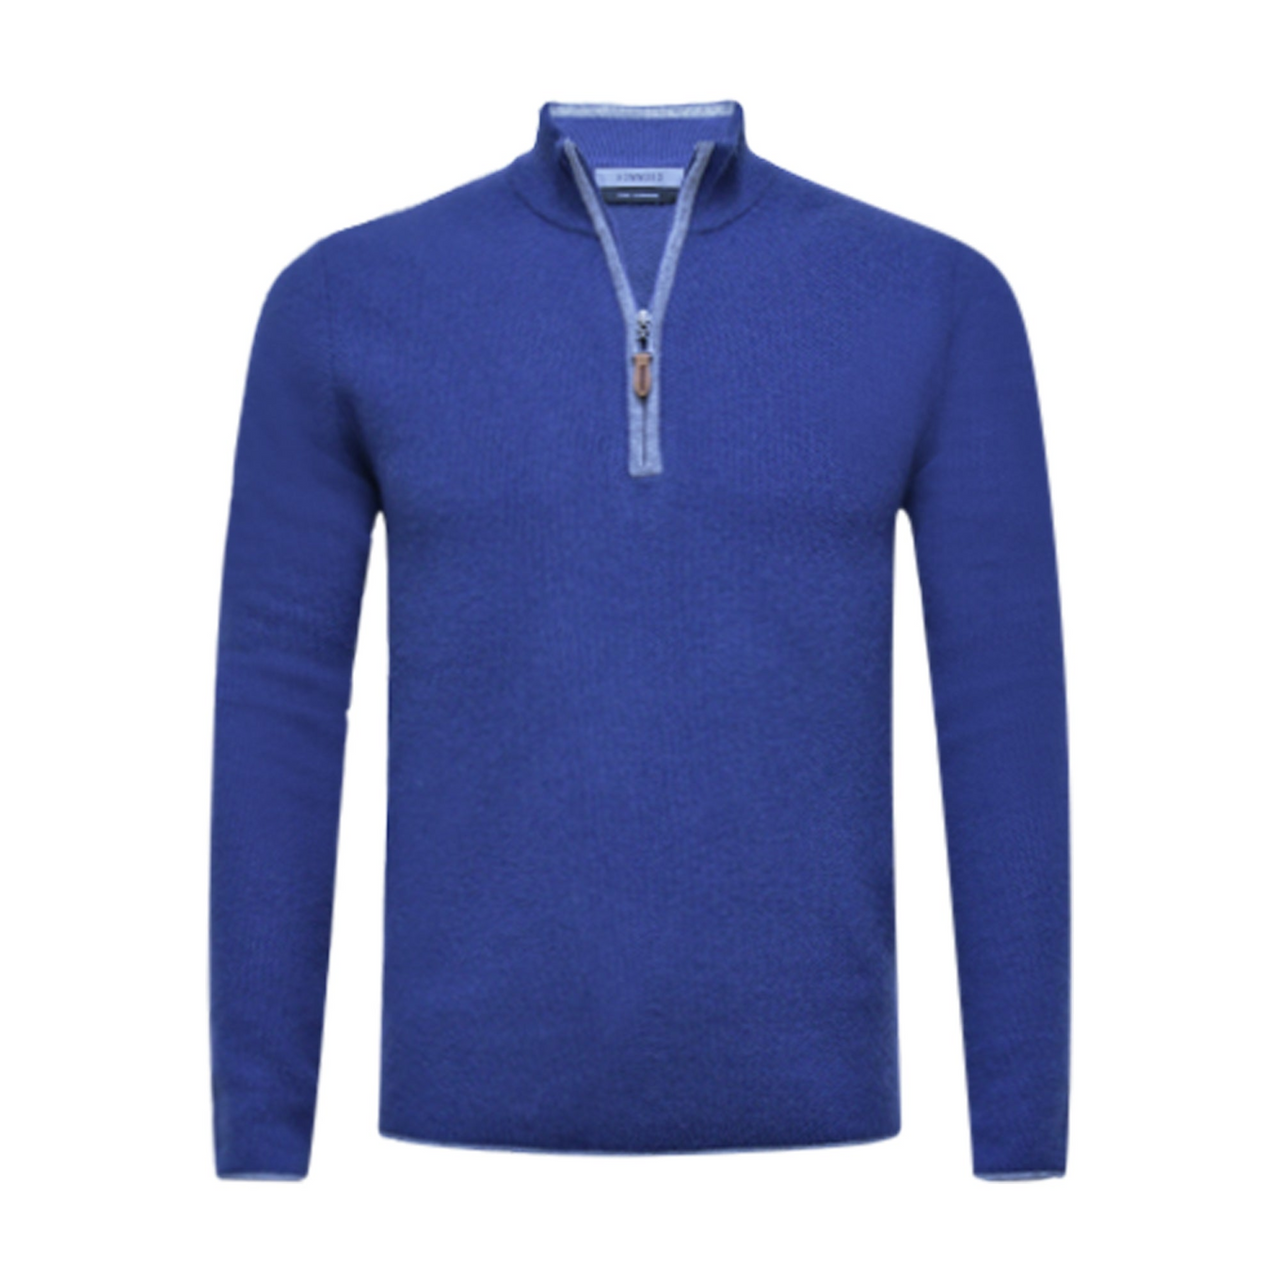 Kobalt Blue Cashmere Zip Neck Sweater Verbier in pique stitch